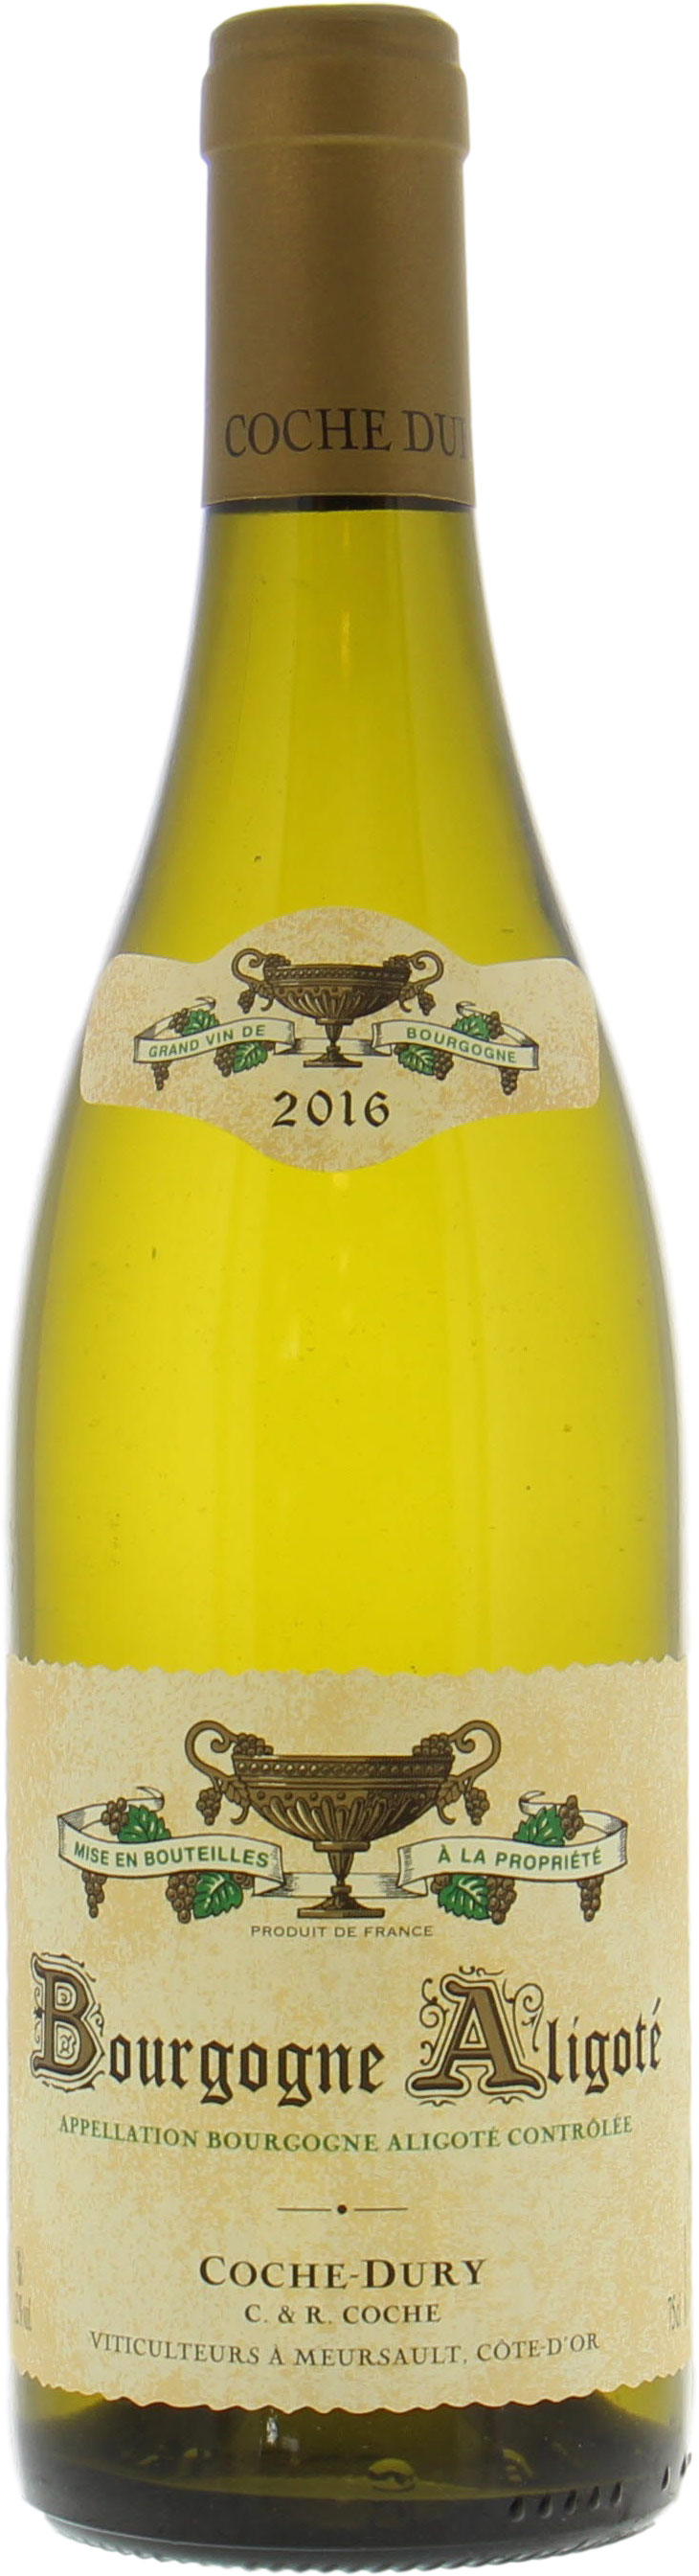 Coche Dury - Bourgogne Aligote 2016 Perfect